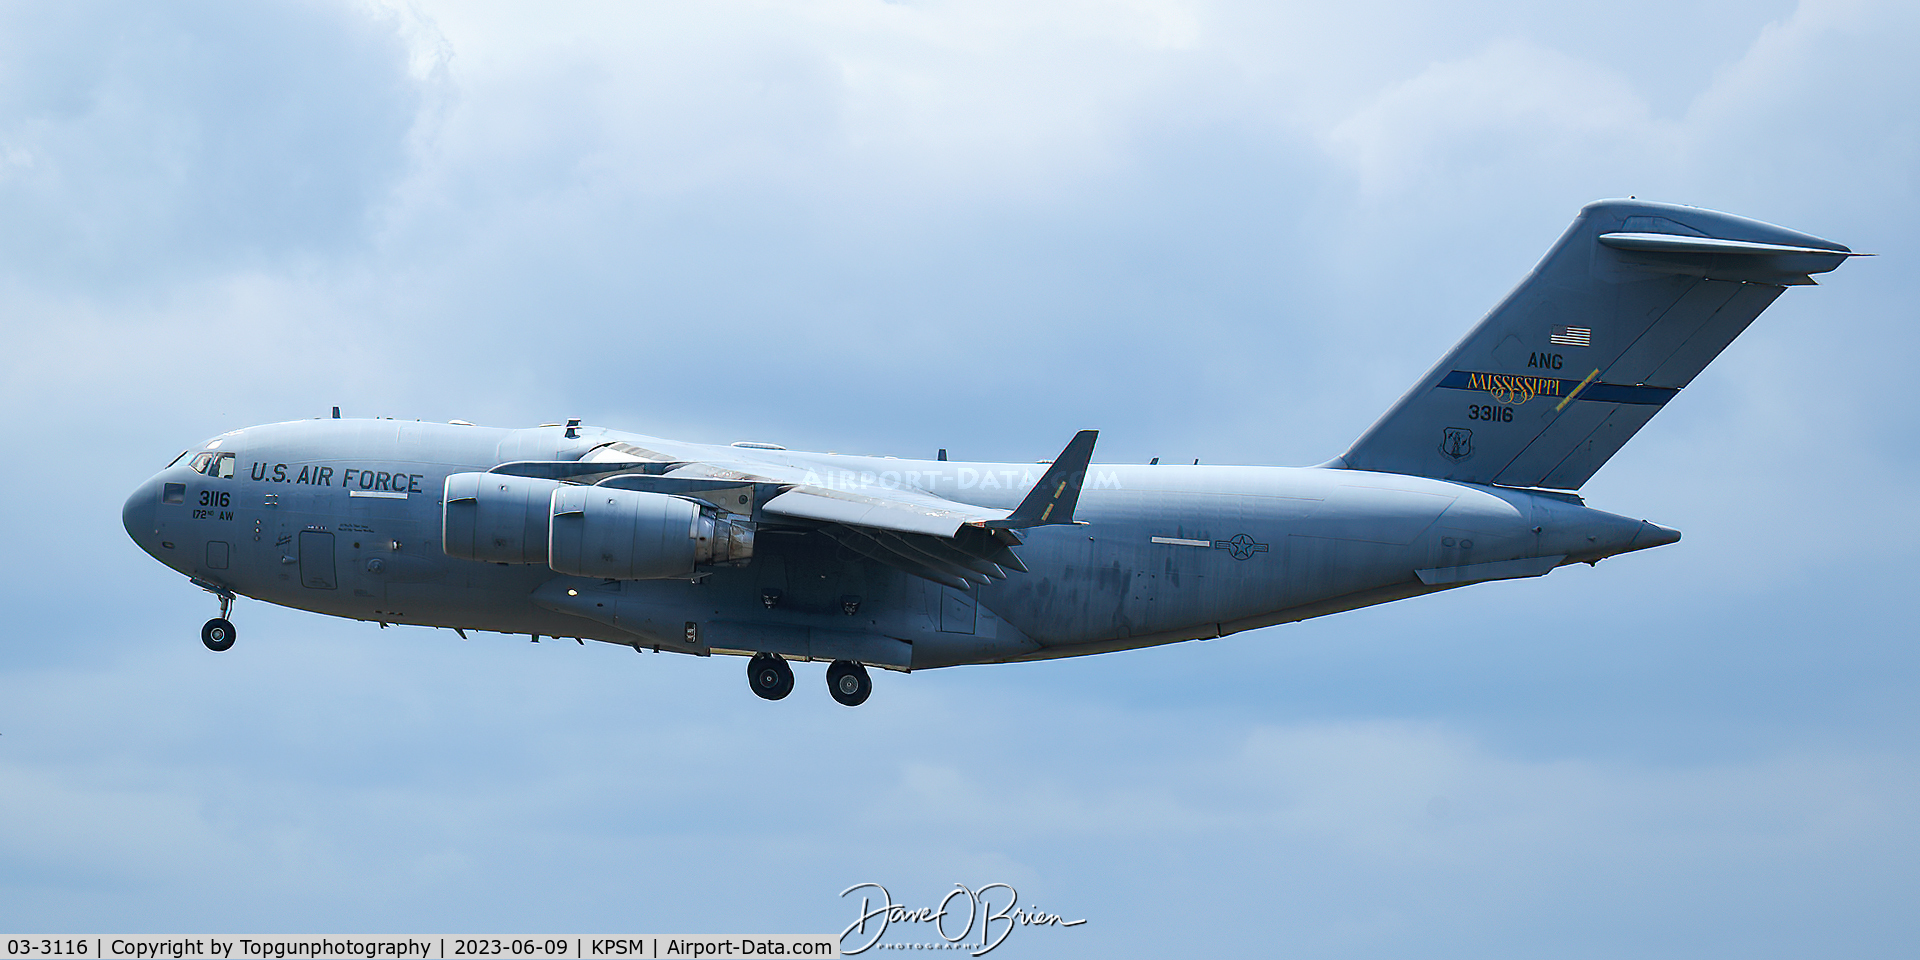 03-3116, 2004 Boeing C-17A Globemaster III C/N F-123, REACH269